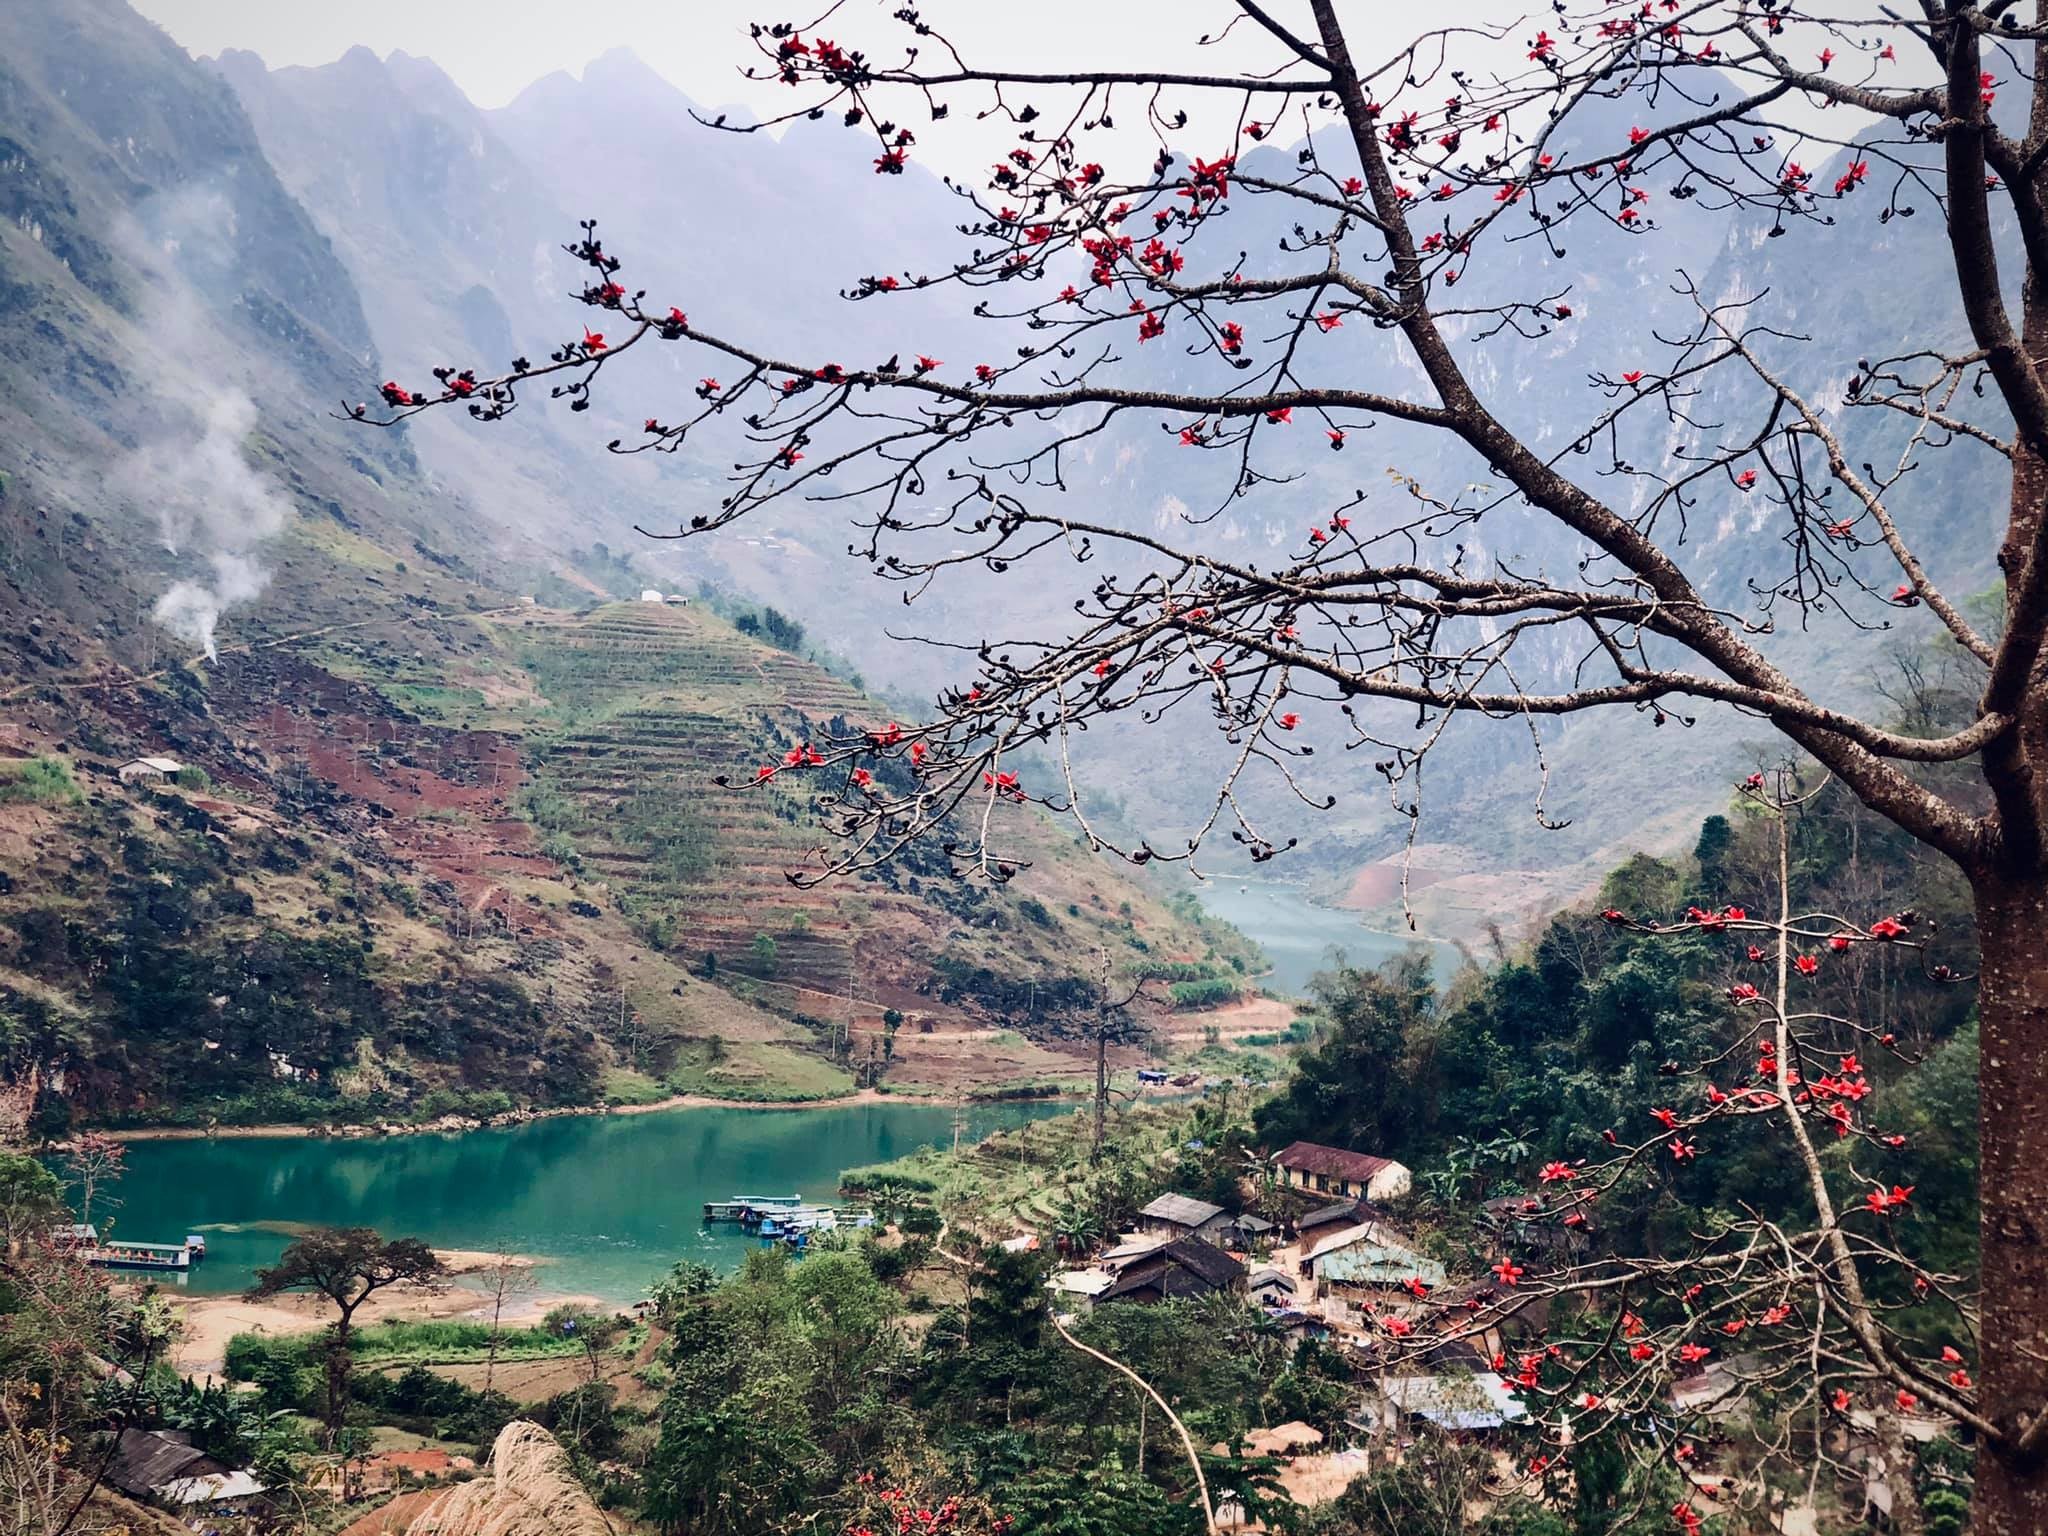 Hà Giang là một trong những điểm đến hấp dẫn của Việt Nam với nhiều cảnh quan đẹp mê hồn. Nếu bạn yêu thích sự phiêu lưu và khám phá, hãy đến Hà Giang và chiêm ngưỡng những cảnh đẹp tuyệt vời. Hình ảnh liên quan đến từ khóa này sẽ giúp bạn có cái nhìn rõ hơn về vùng đất này.